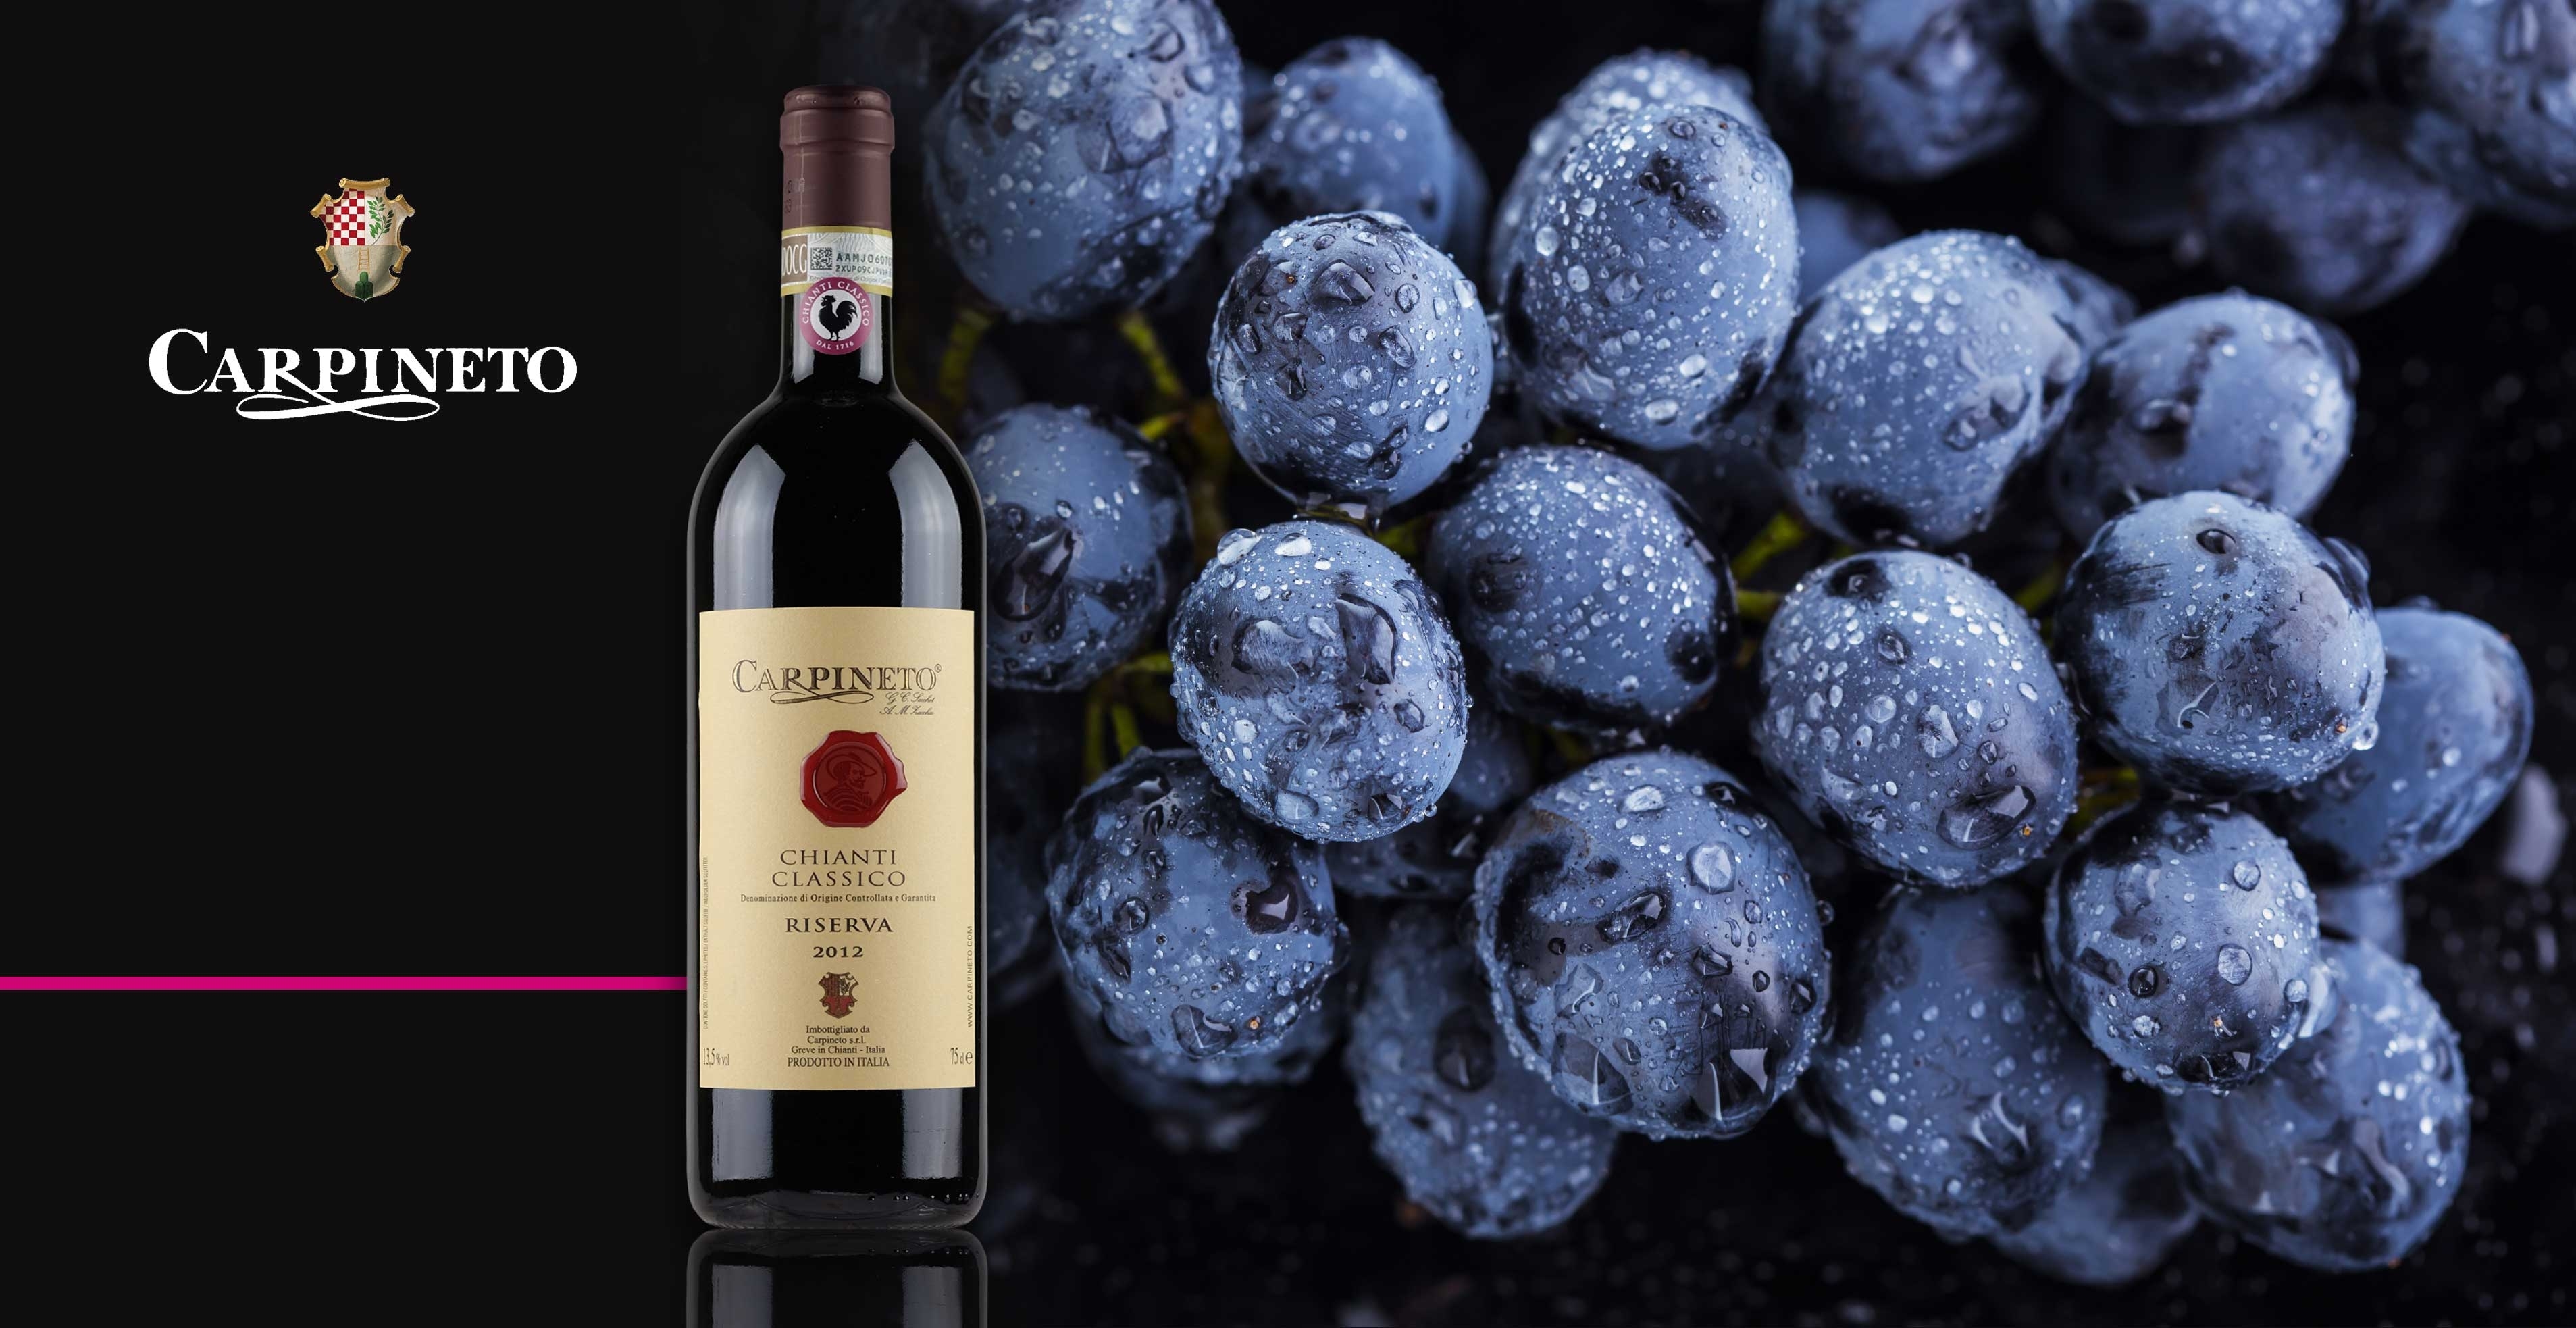 Rode wijn - Carpineto - Chianti Classico Riserva